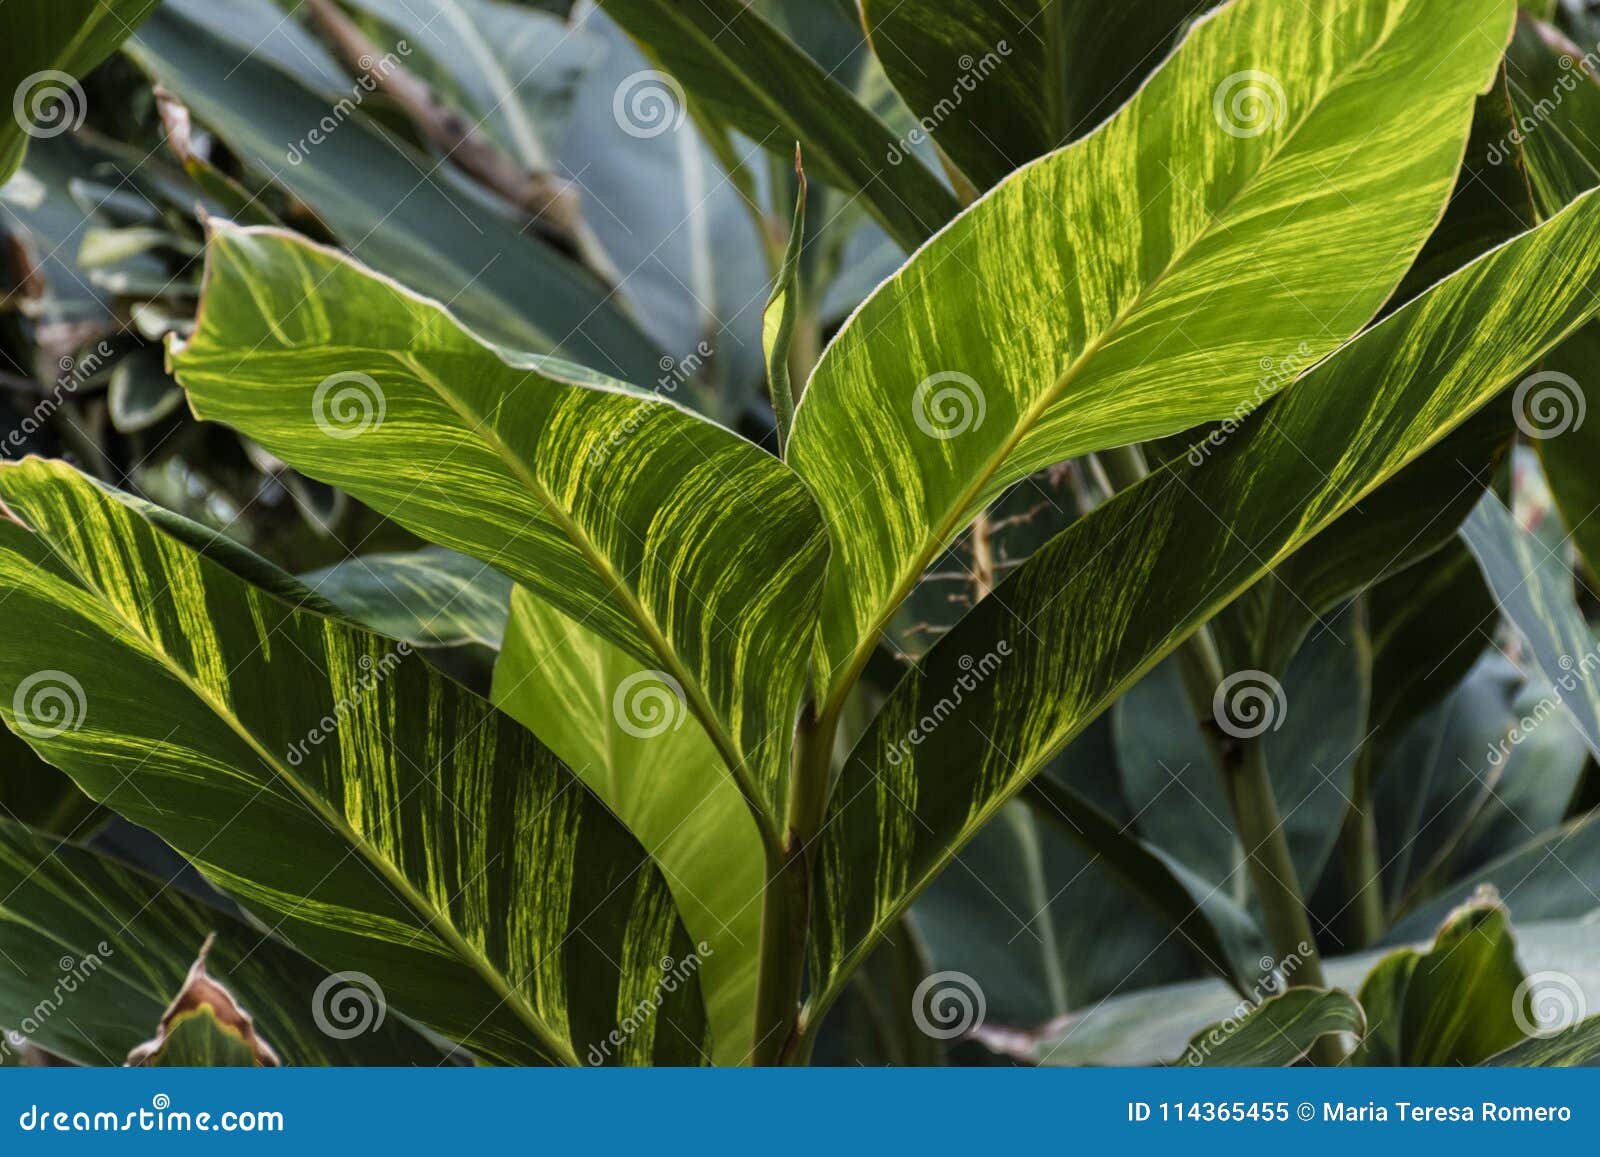 Folhas Verdes E Amarelas Da Planta Tropical Imagem de Stock - Imagem de  planta, detalhe: 114365455